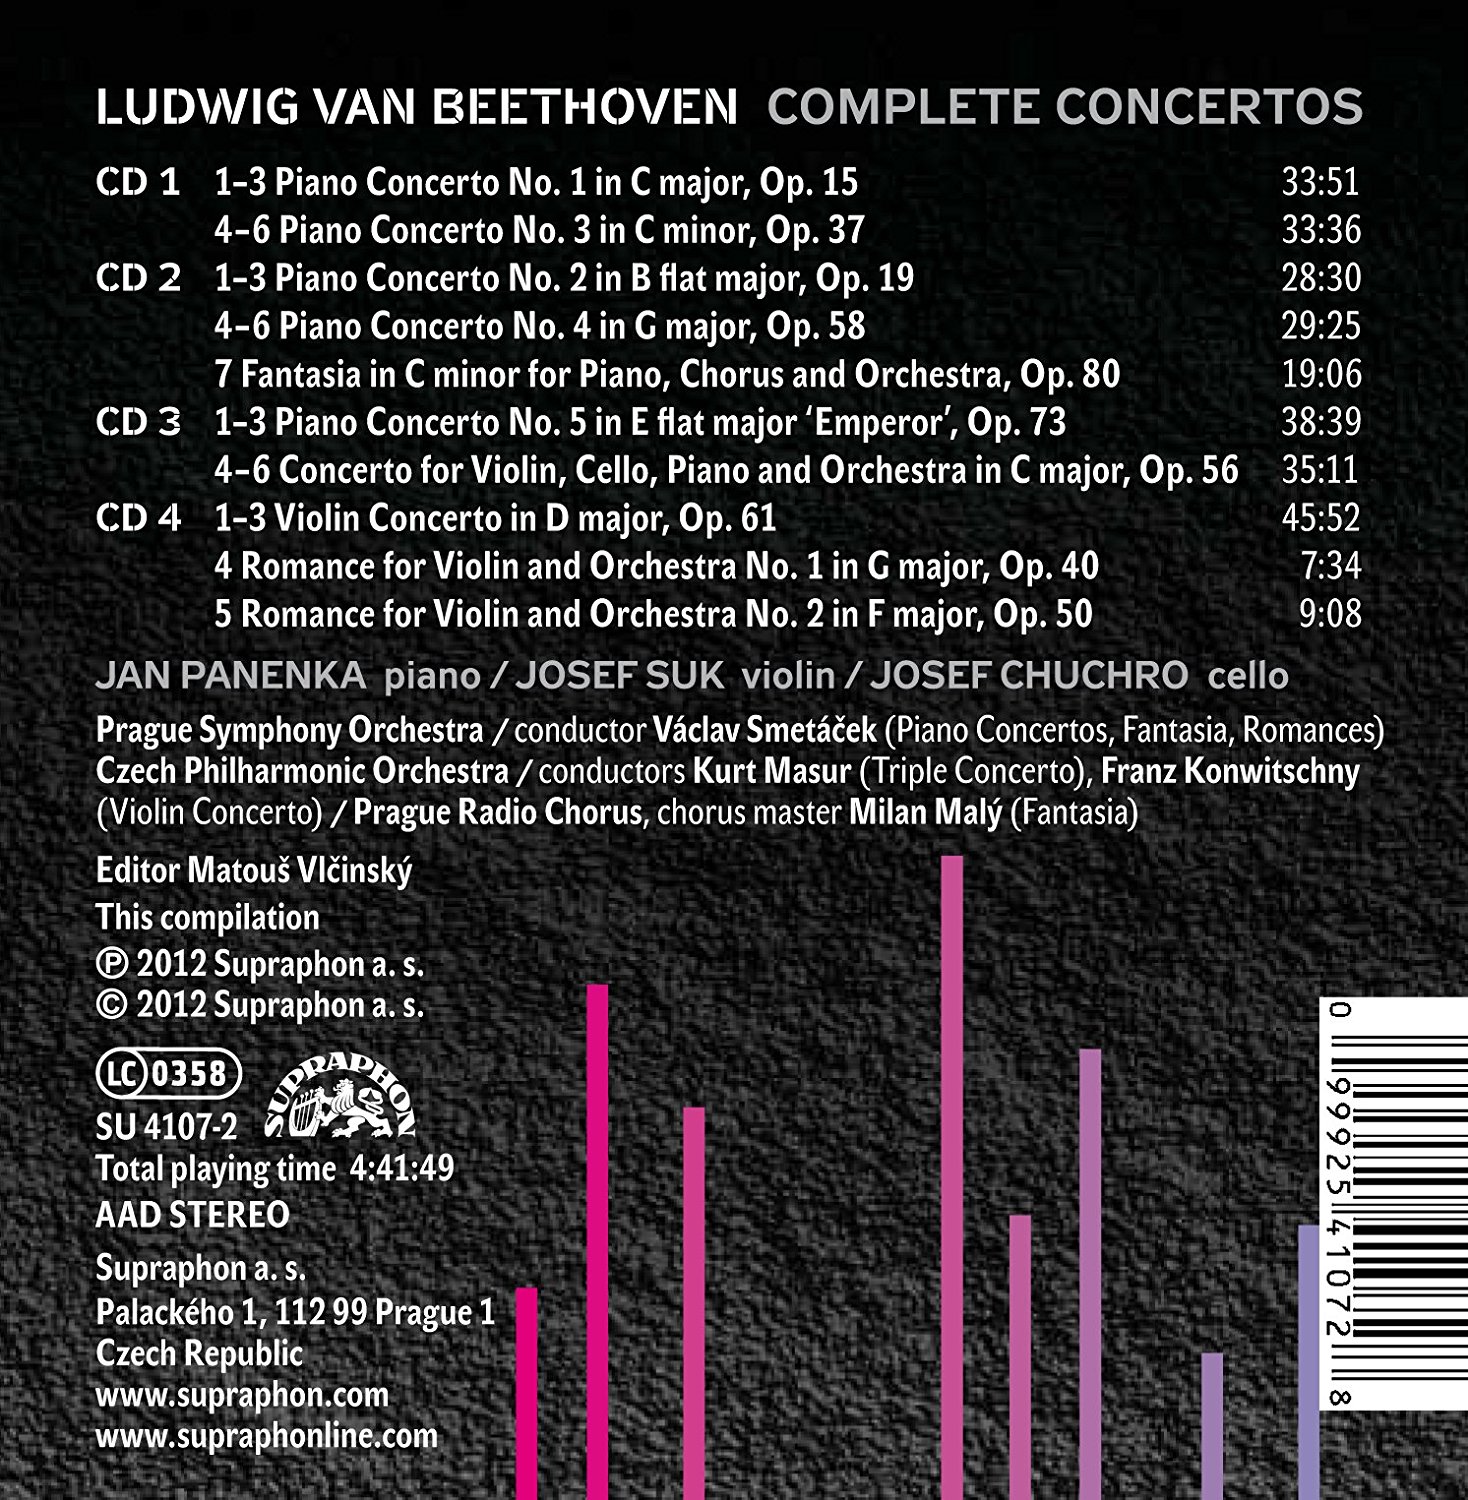 Beethoven - Concertos